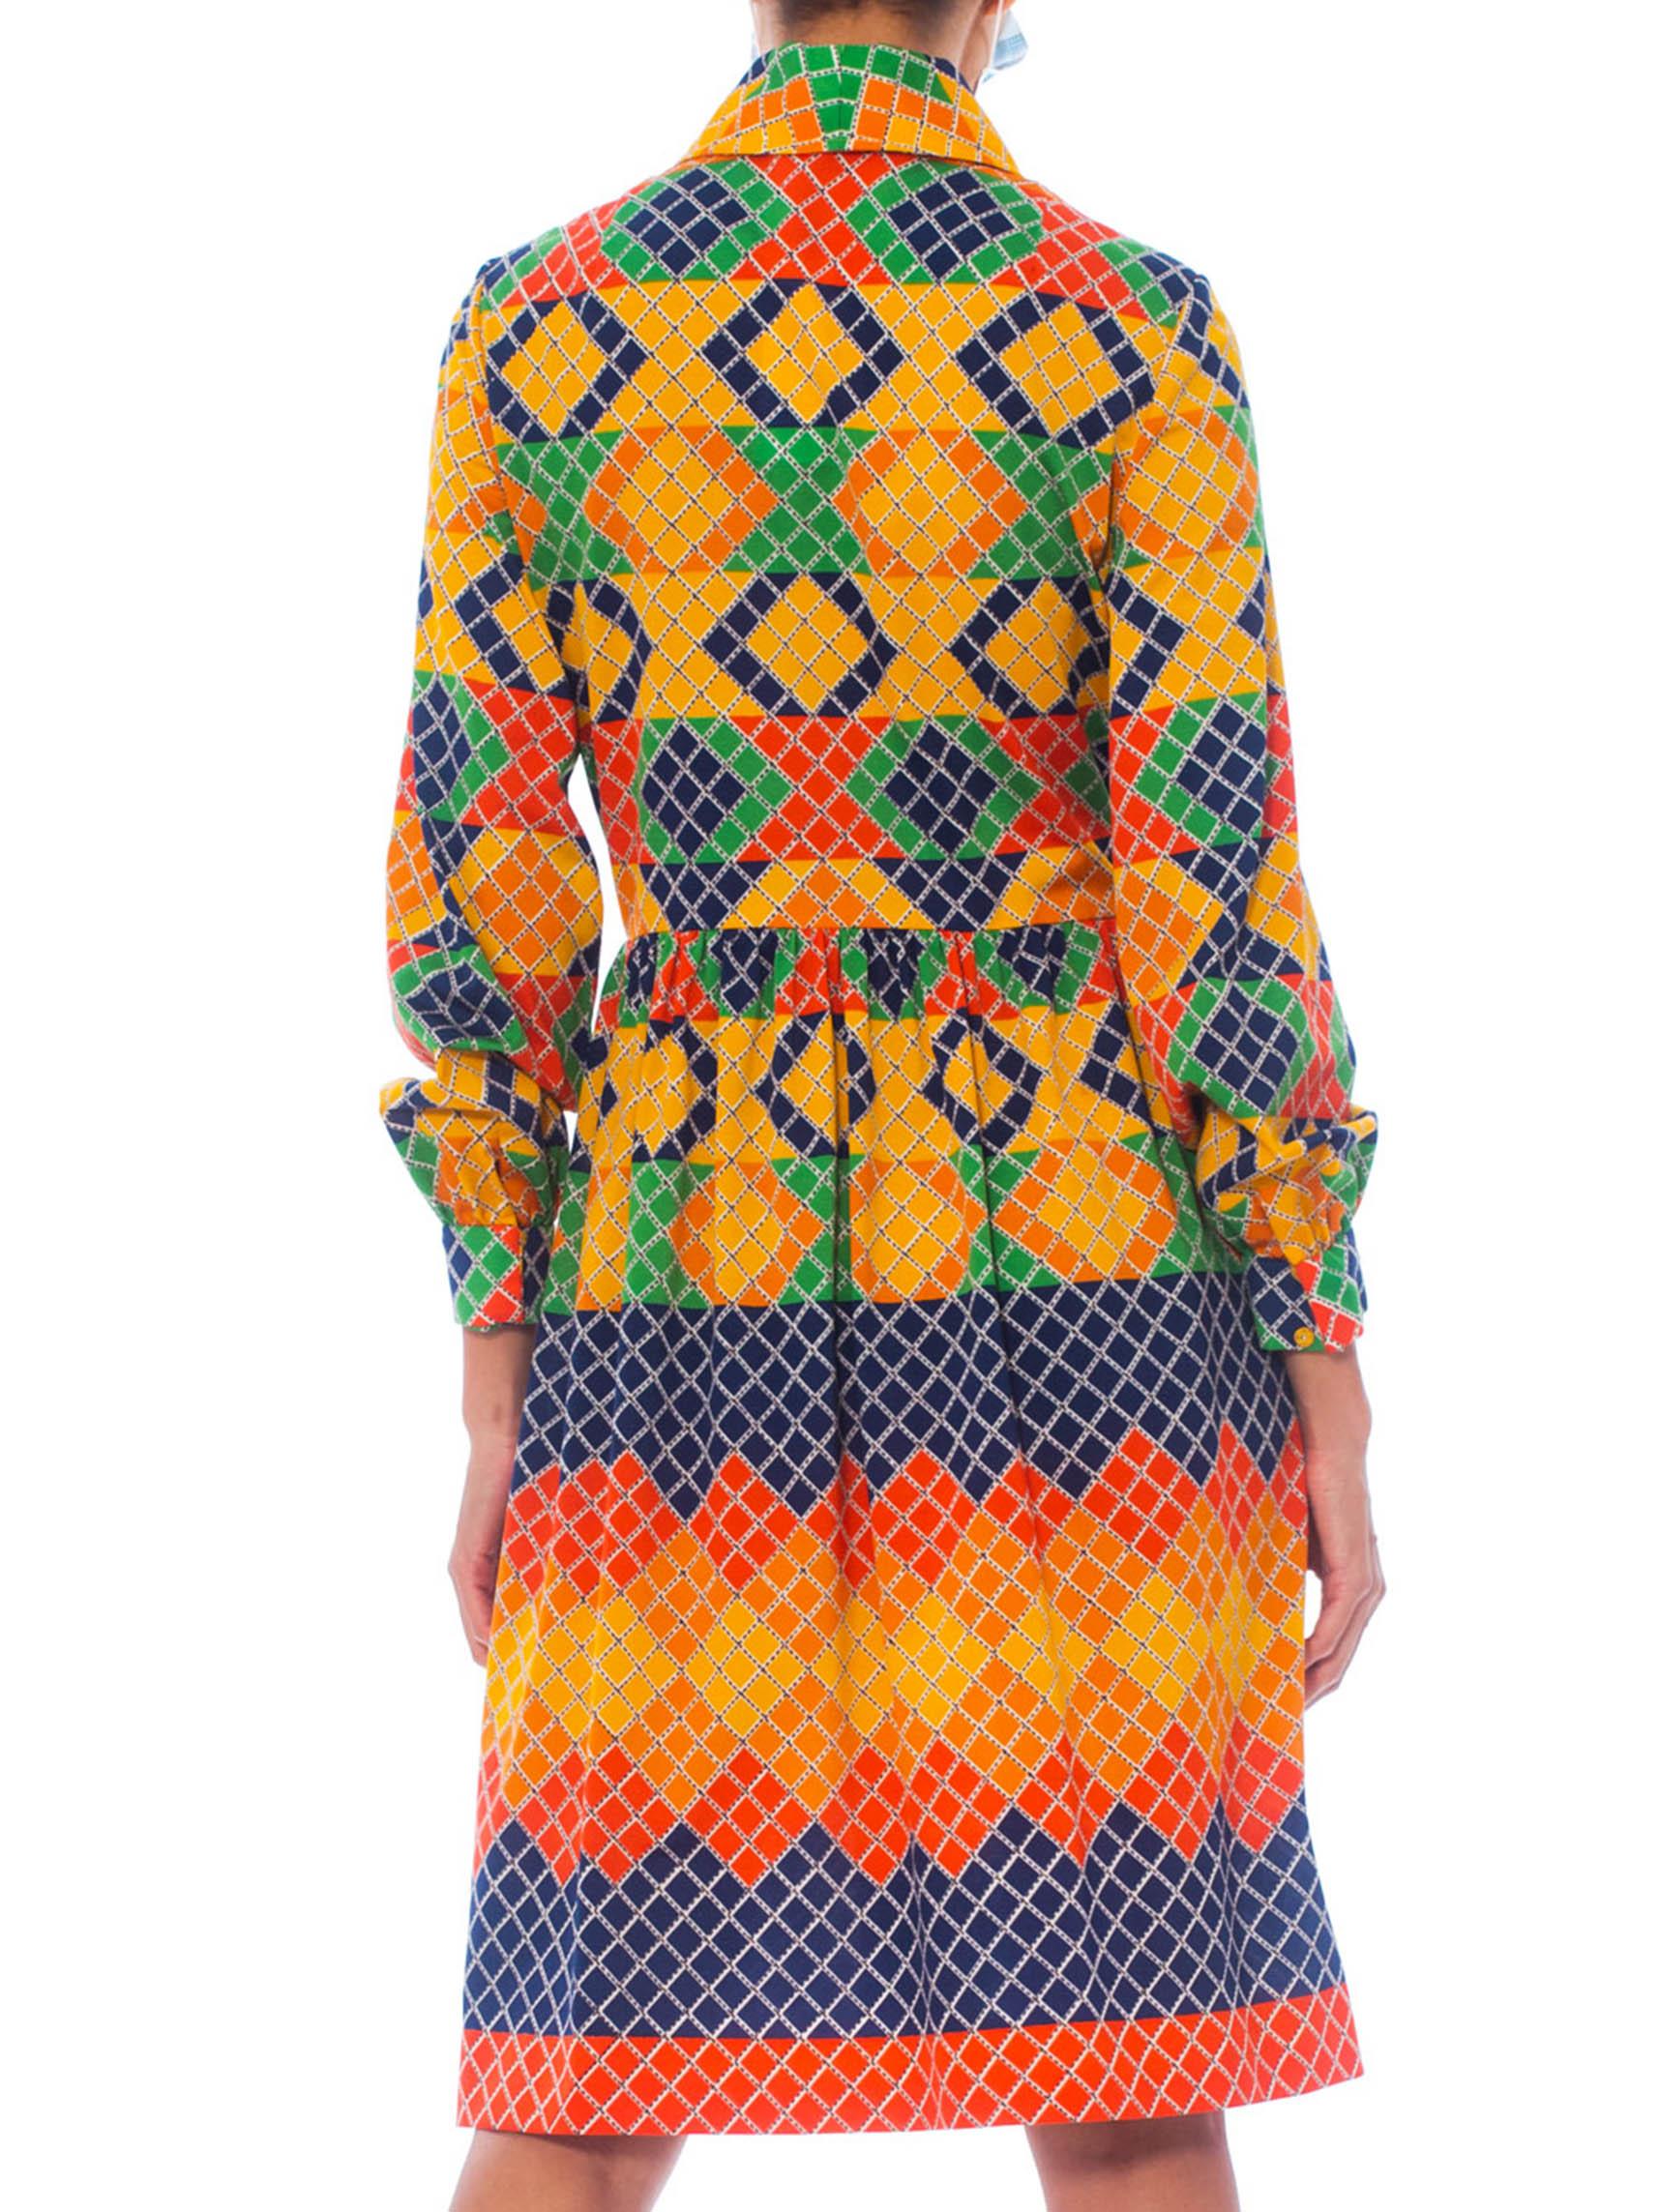 OSCAR DE LA RENTA Robe chemise en jersey de polyester multicolore à motifs géométriques, années 1960 4